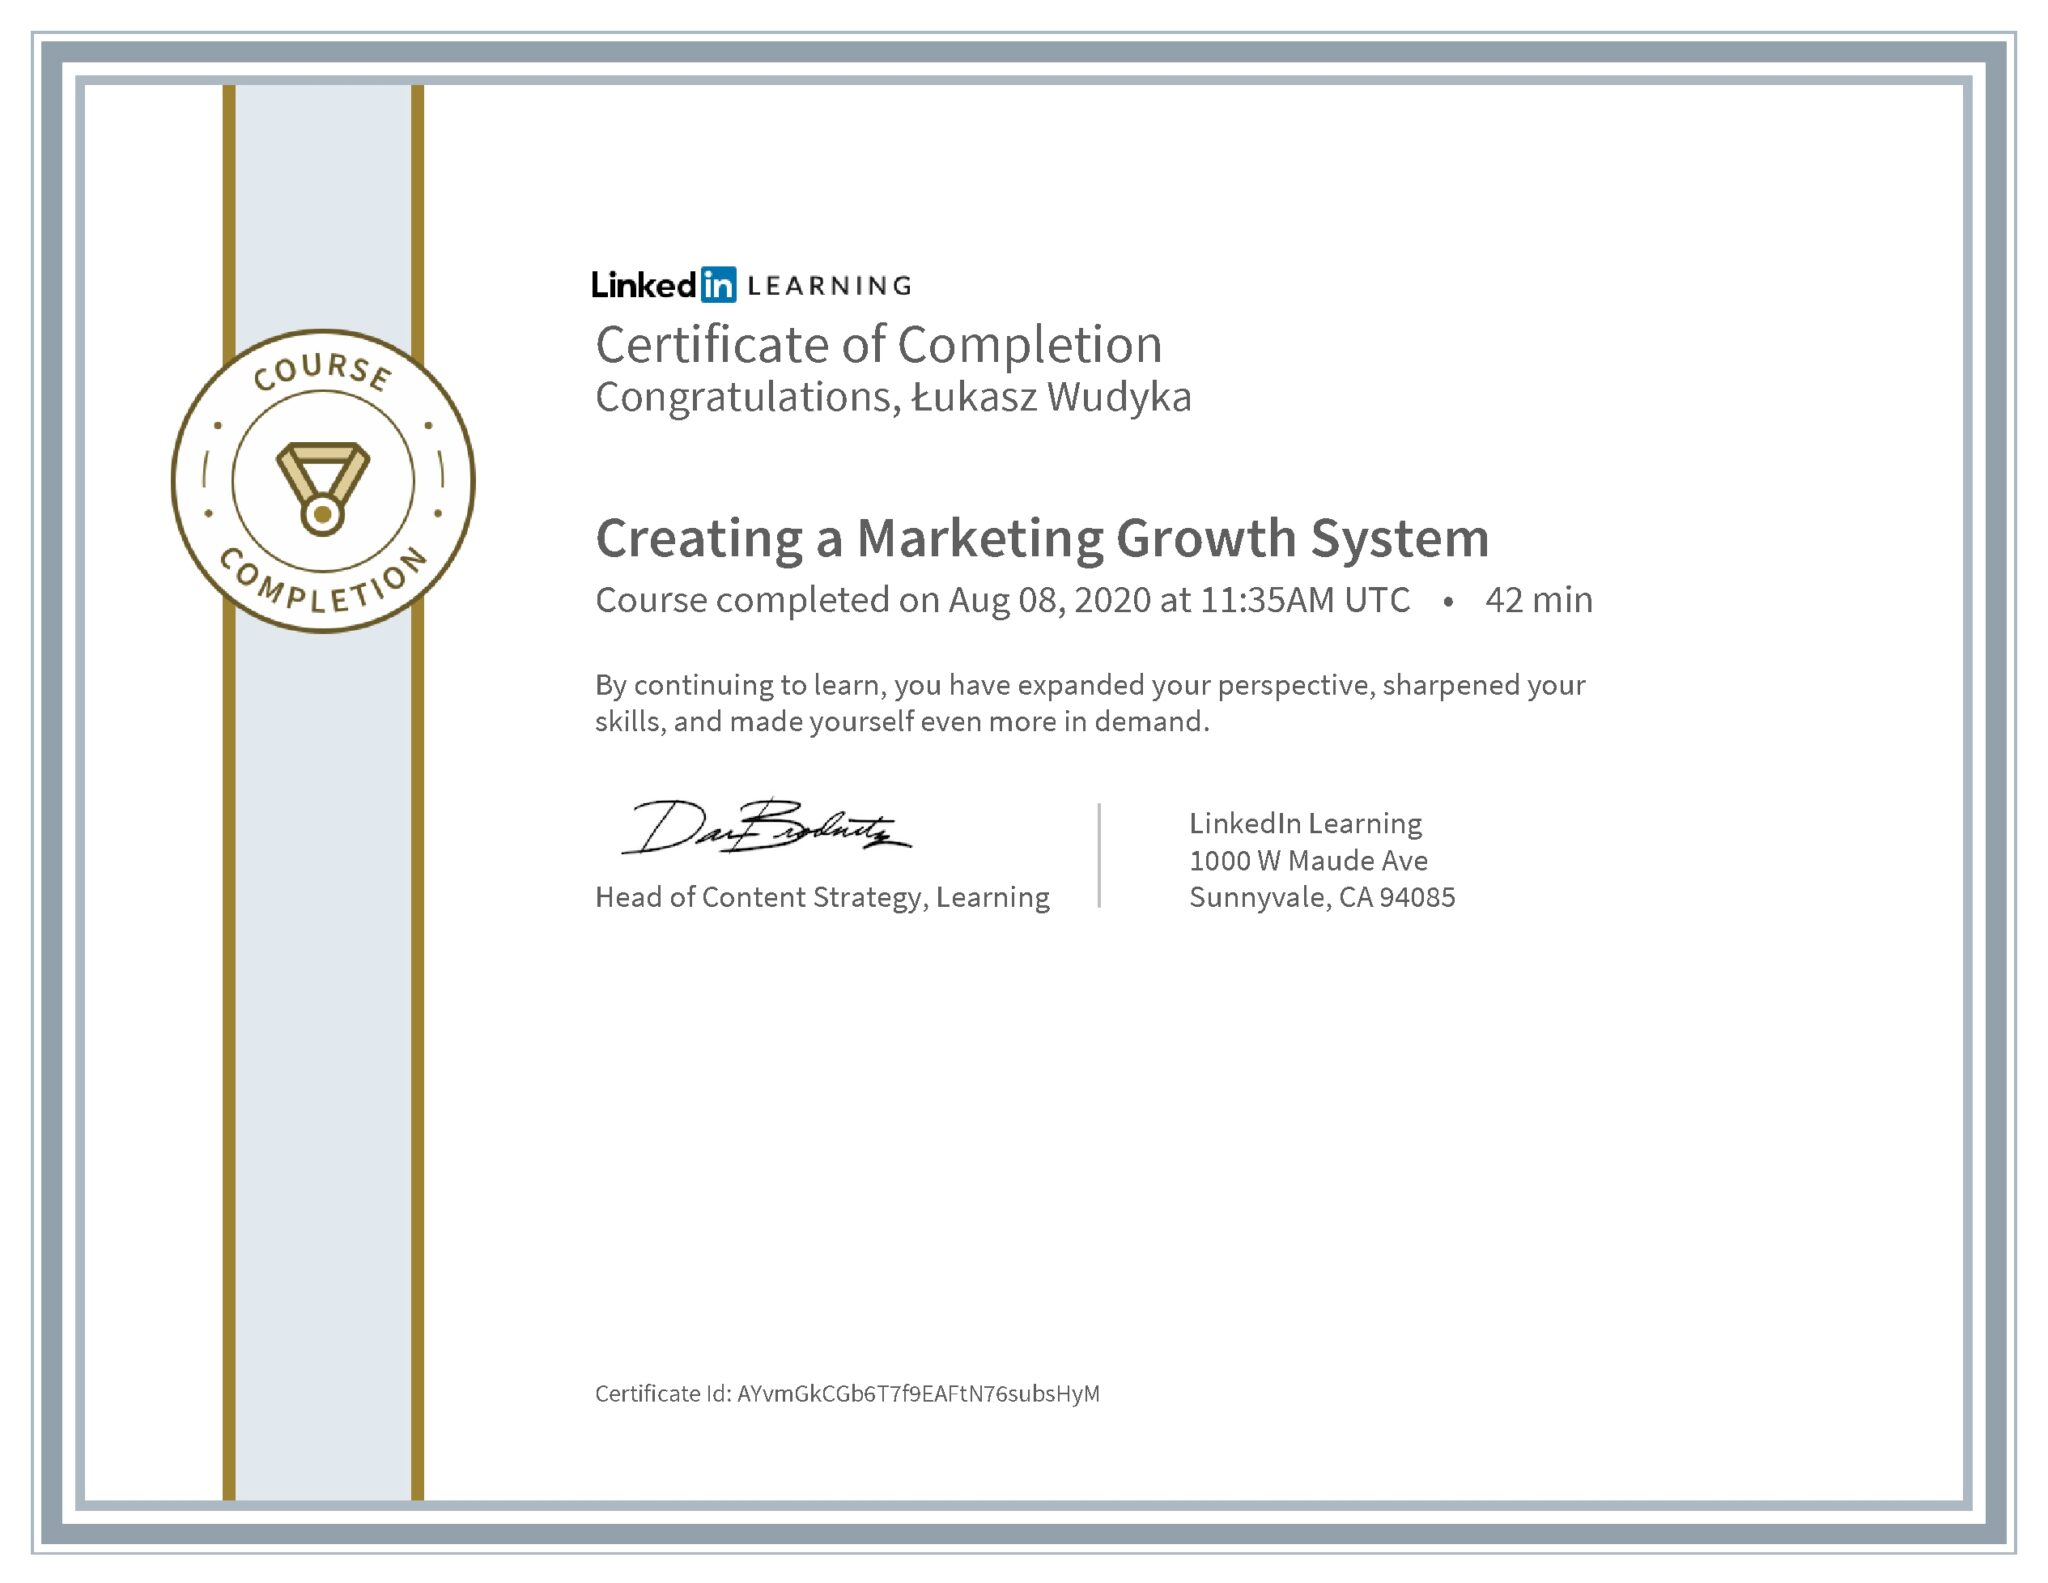 Łukasz Wudyka certyfikat LinkedIn Creating a Marketing Growth System